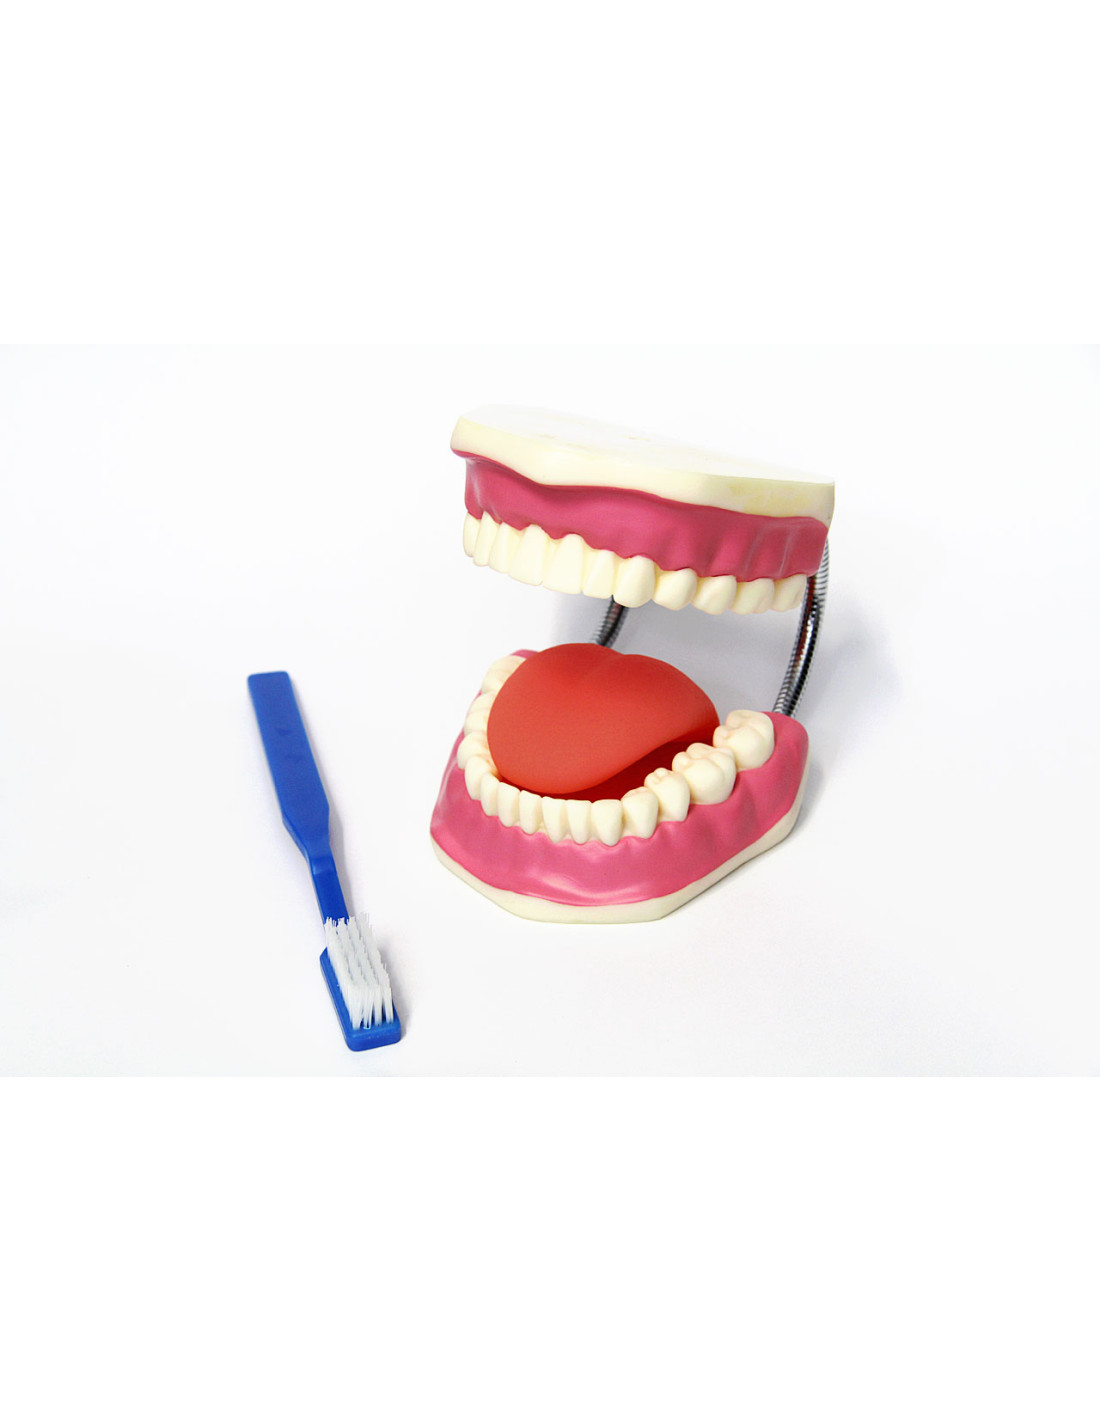 Modèle dentaire standard - Modèle de brossage des dents Pratique Pour  enfants Enseignement dentaire Fournitures d'étude Affichage propre Modèle  de dents de démonstration standard pour adultes